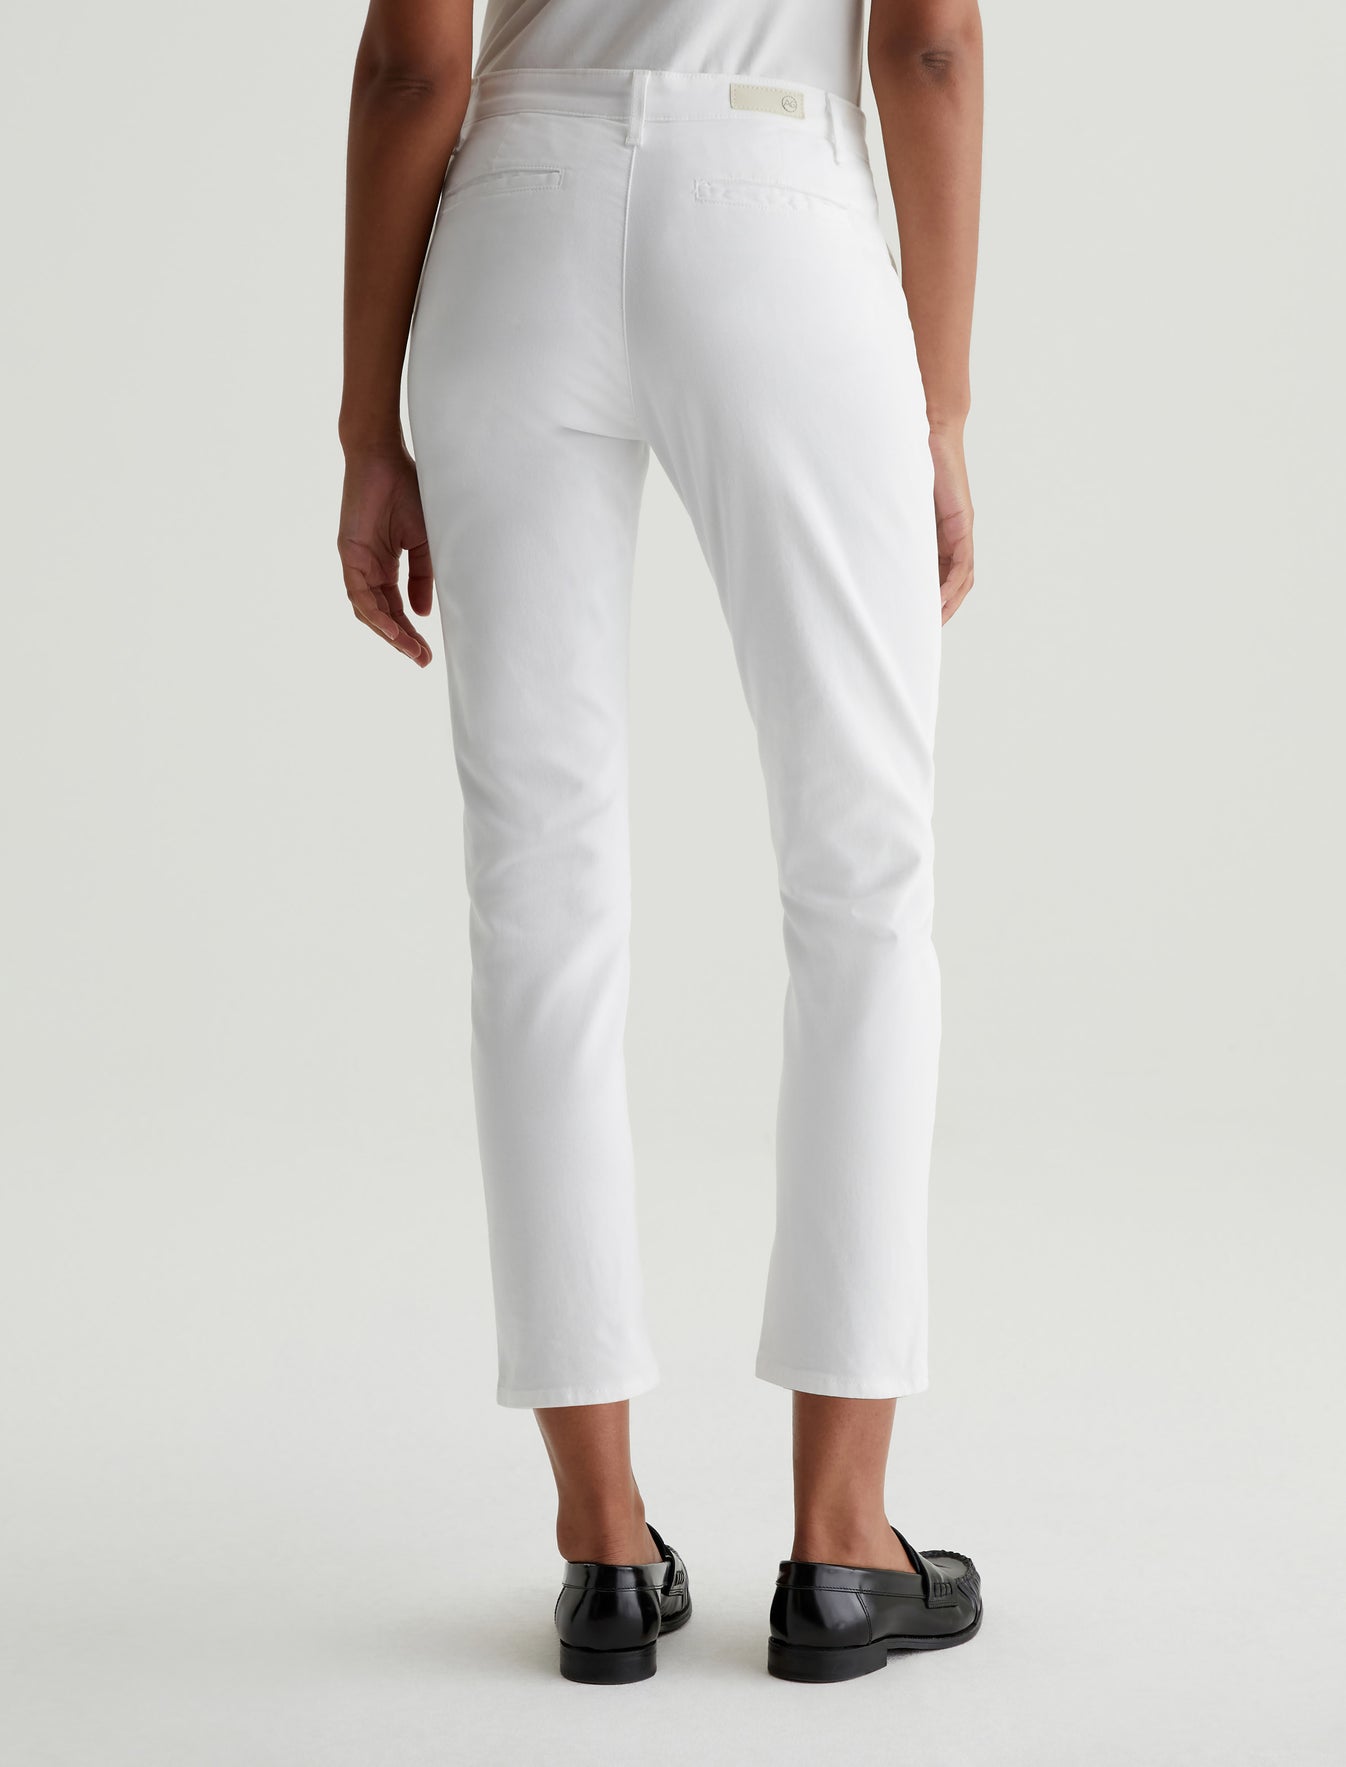 Caden White Tailored Trouser Women Bottom Photo 7